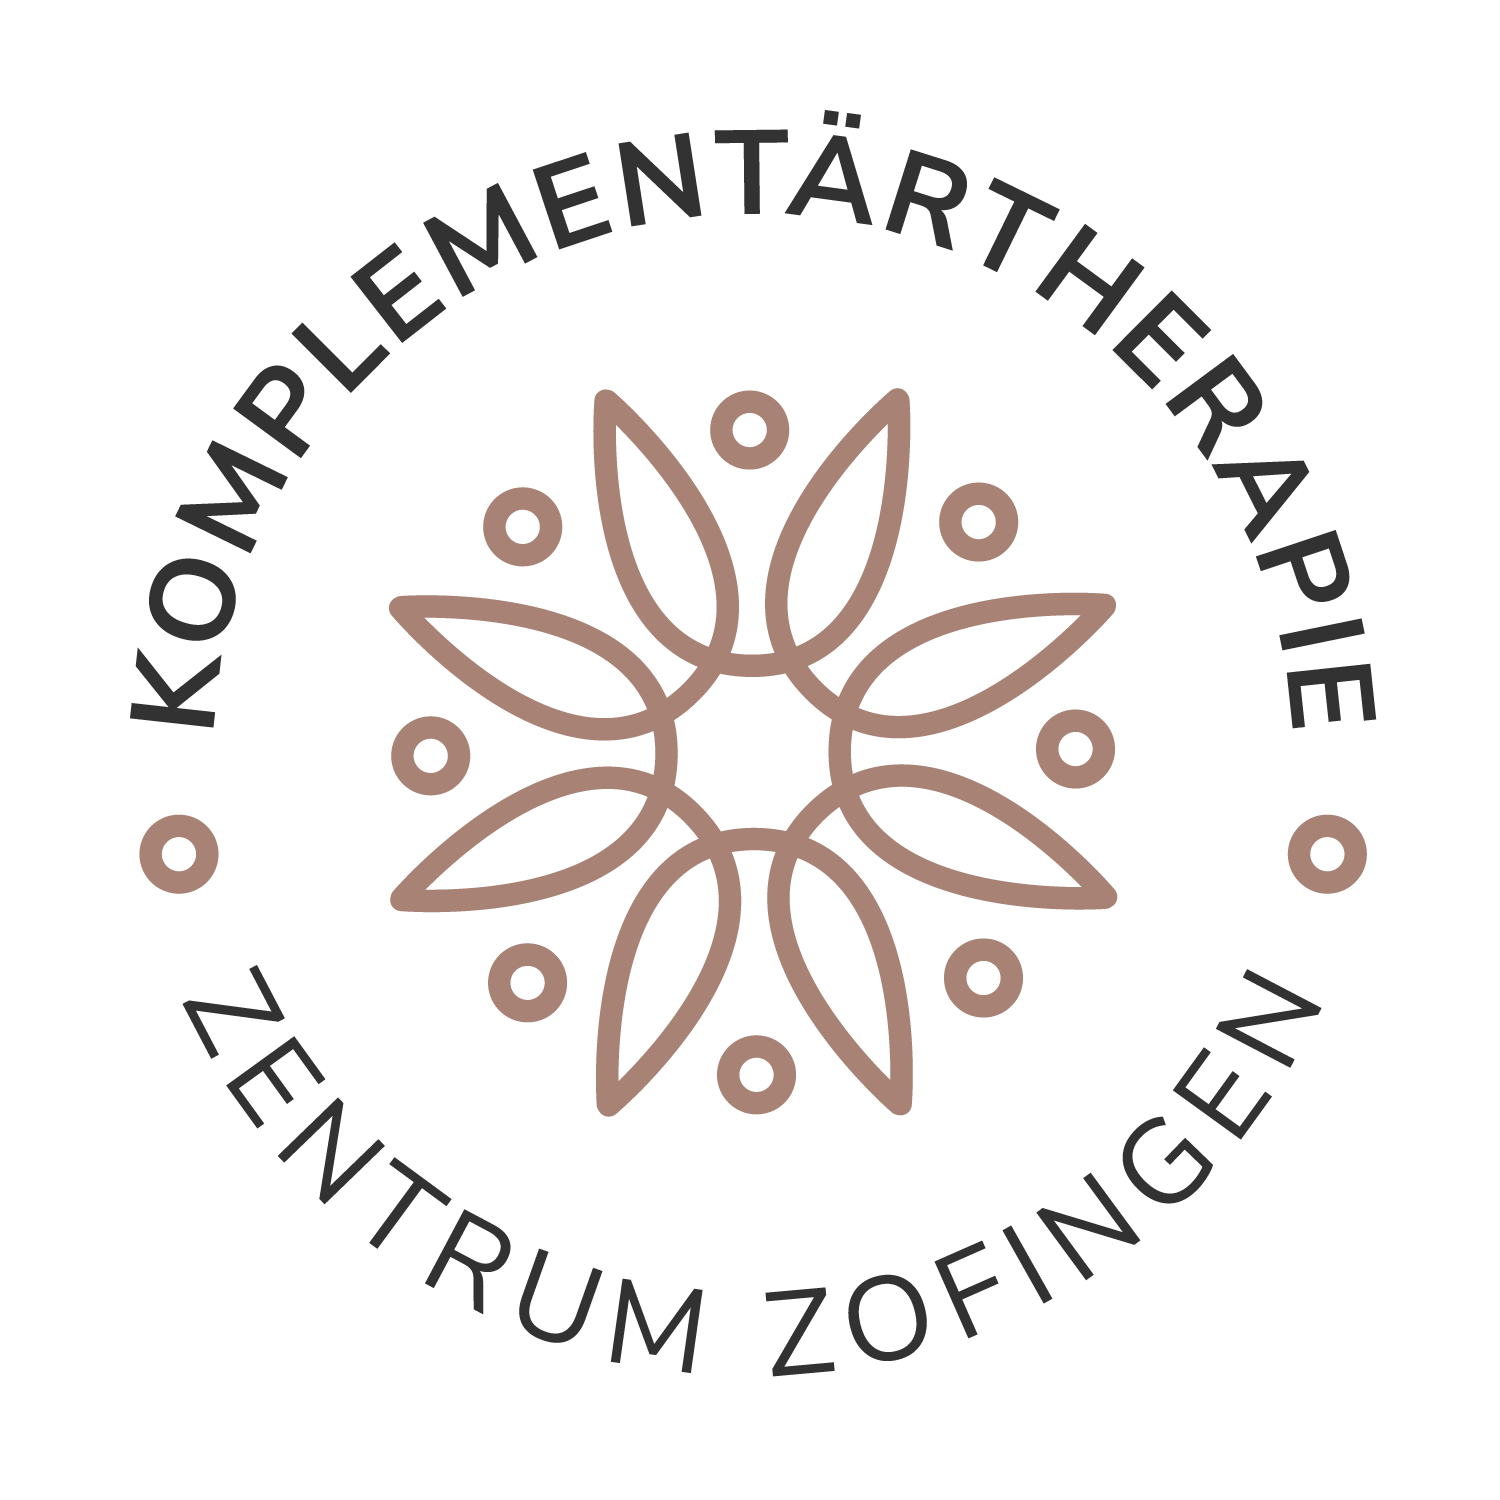 Komplementärtherapie Zentrum Zofingen